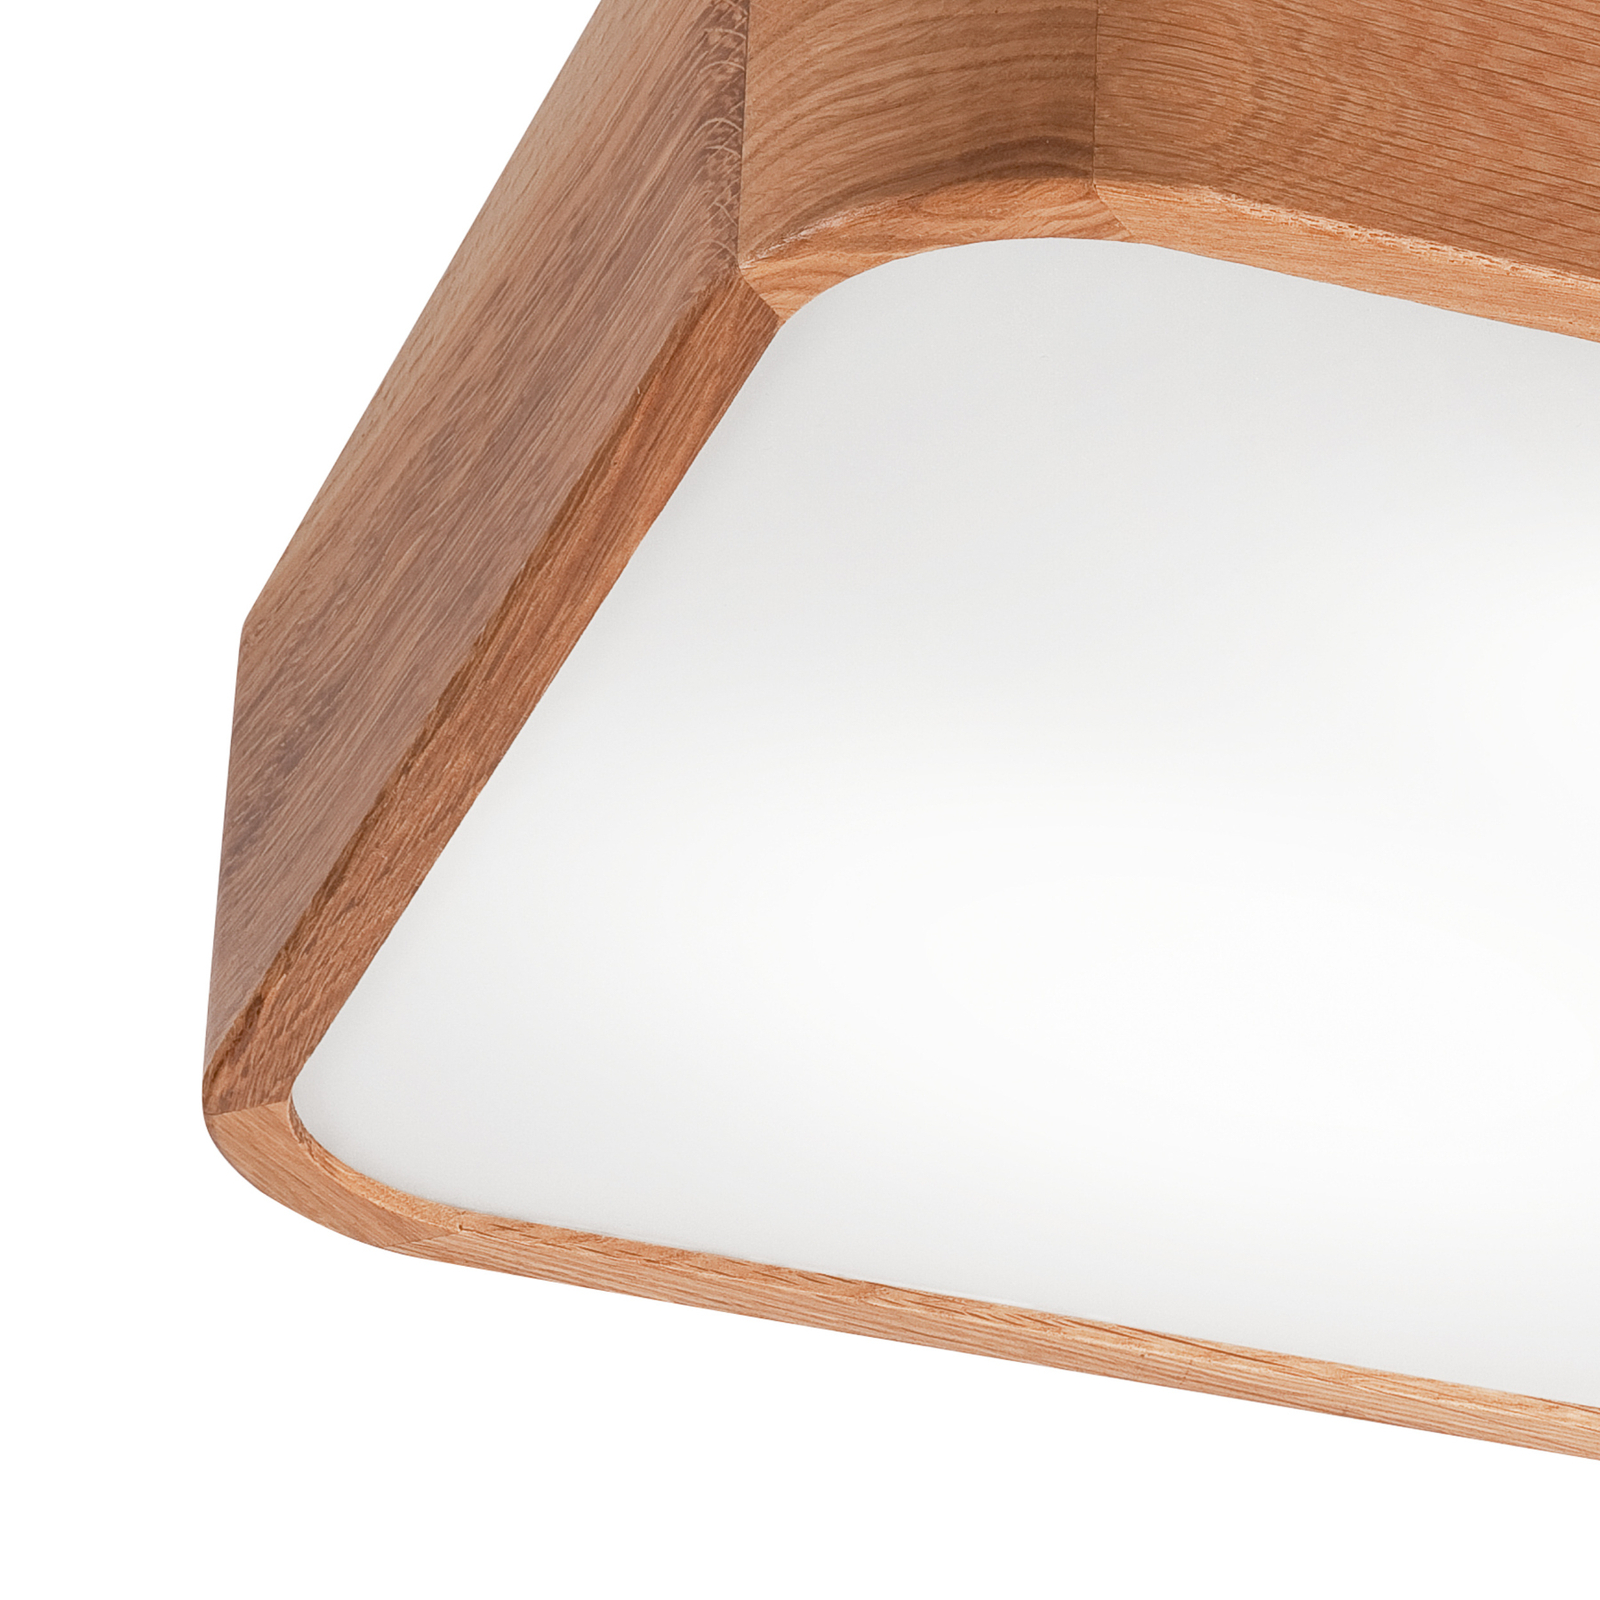 Envostar Gaspar ceiling light angular wood 35x35cm